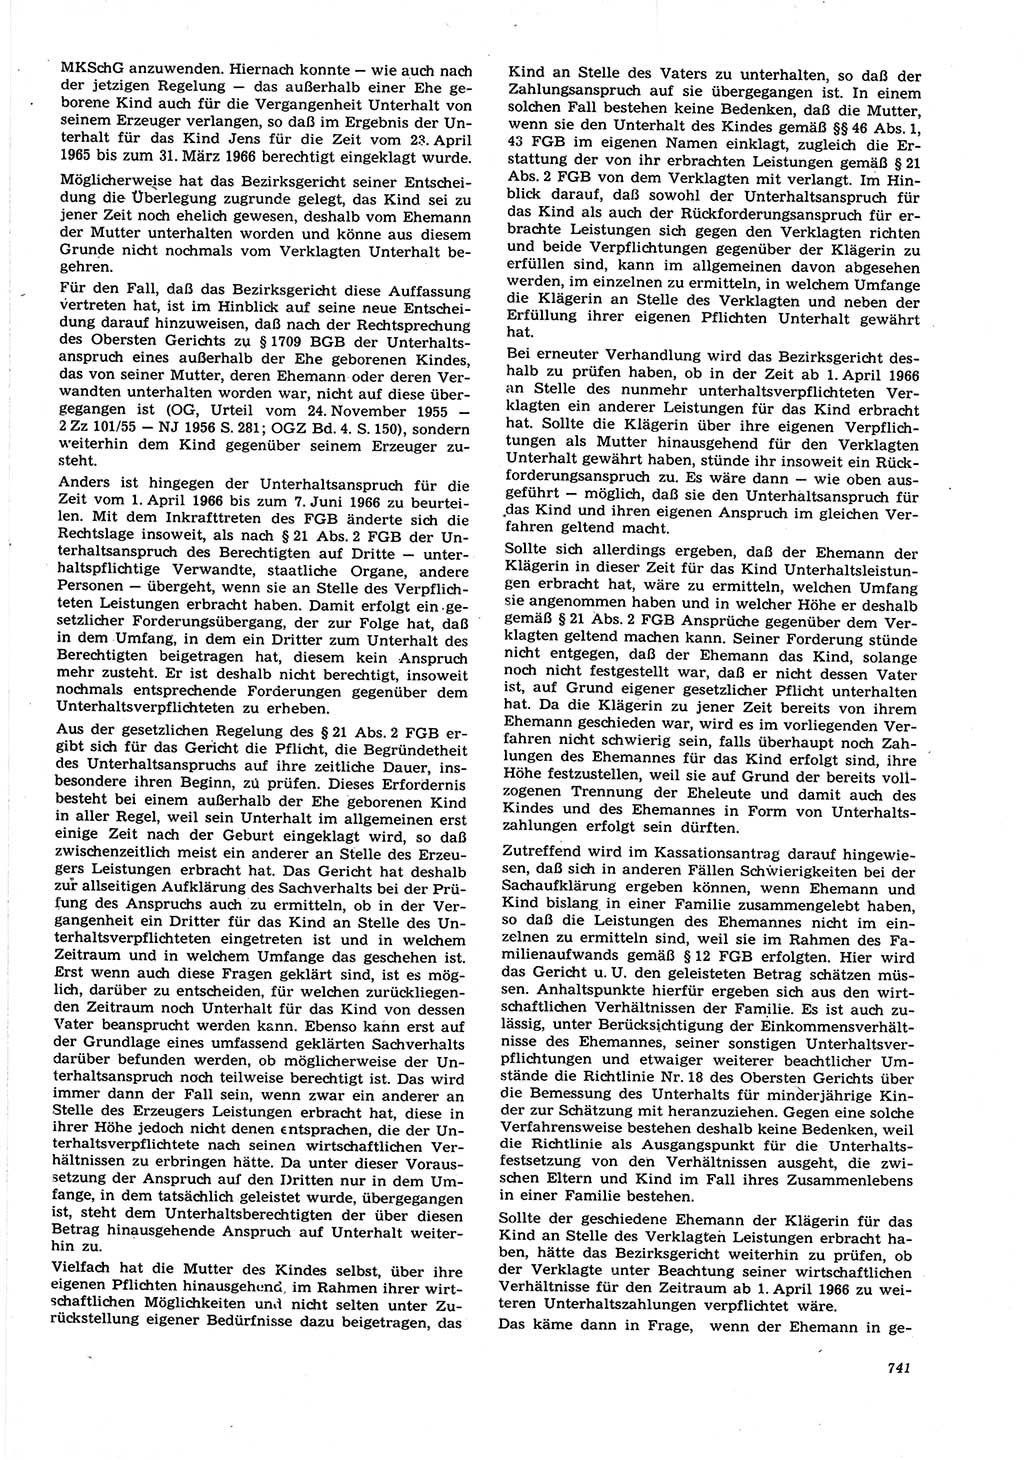 Neue Justiz (NJ), Zeitschrift für Recht und Rechtswissenschaft [Deutsche Demokratische Republik (DDR)], 21. Jahrgang 1967, Seite 741 (NJ DDR 1967, S. 741)